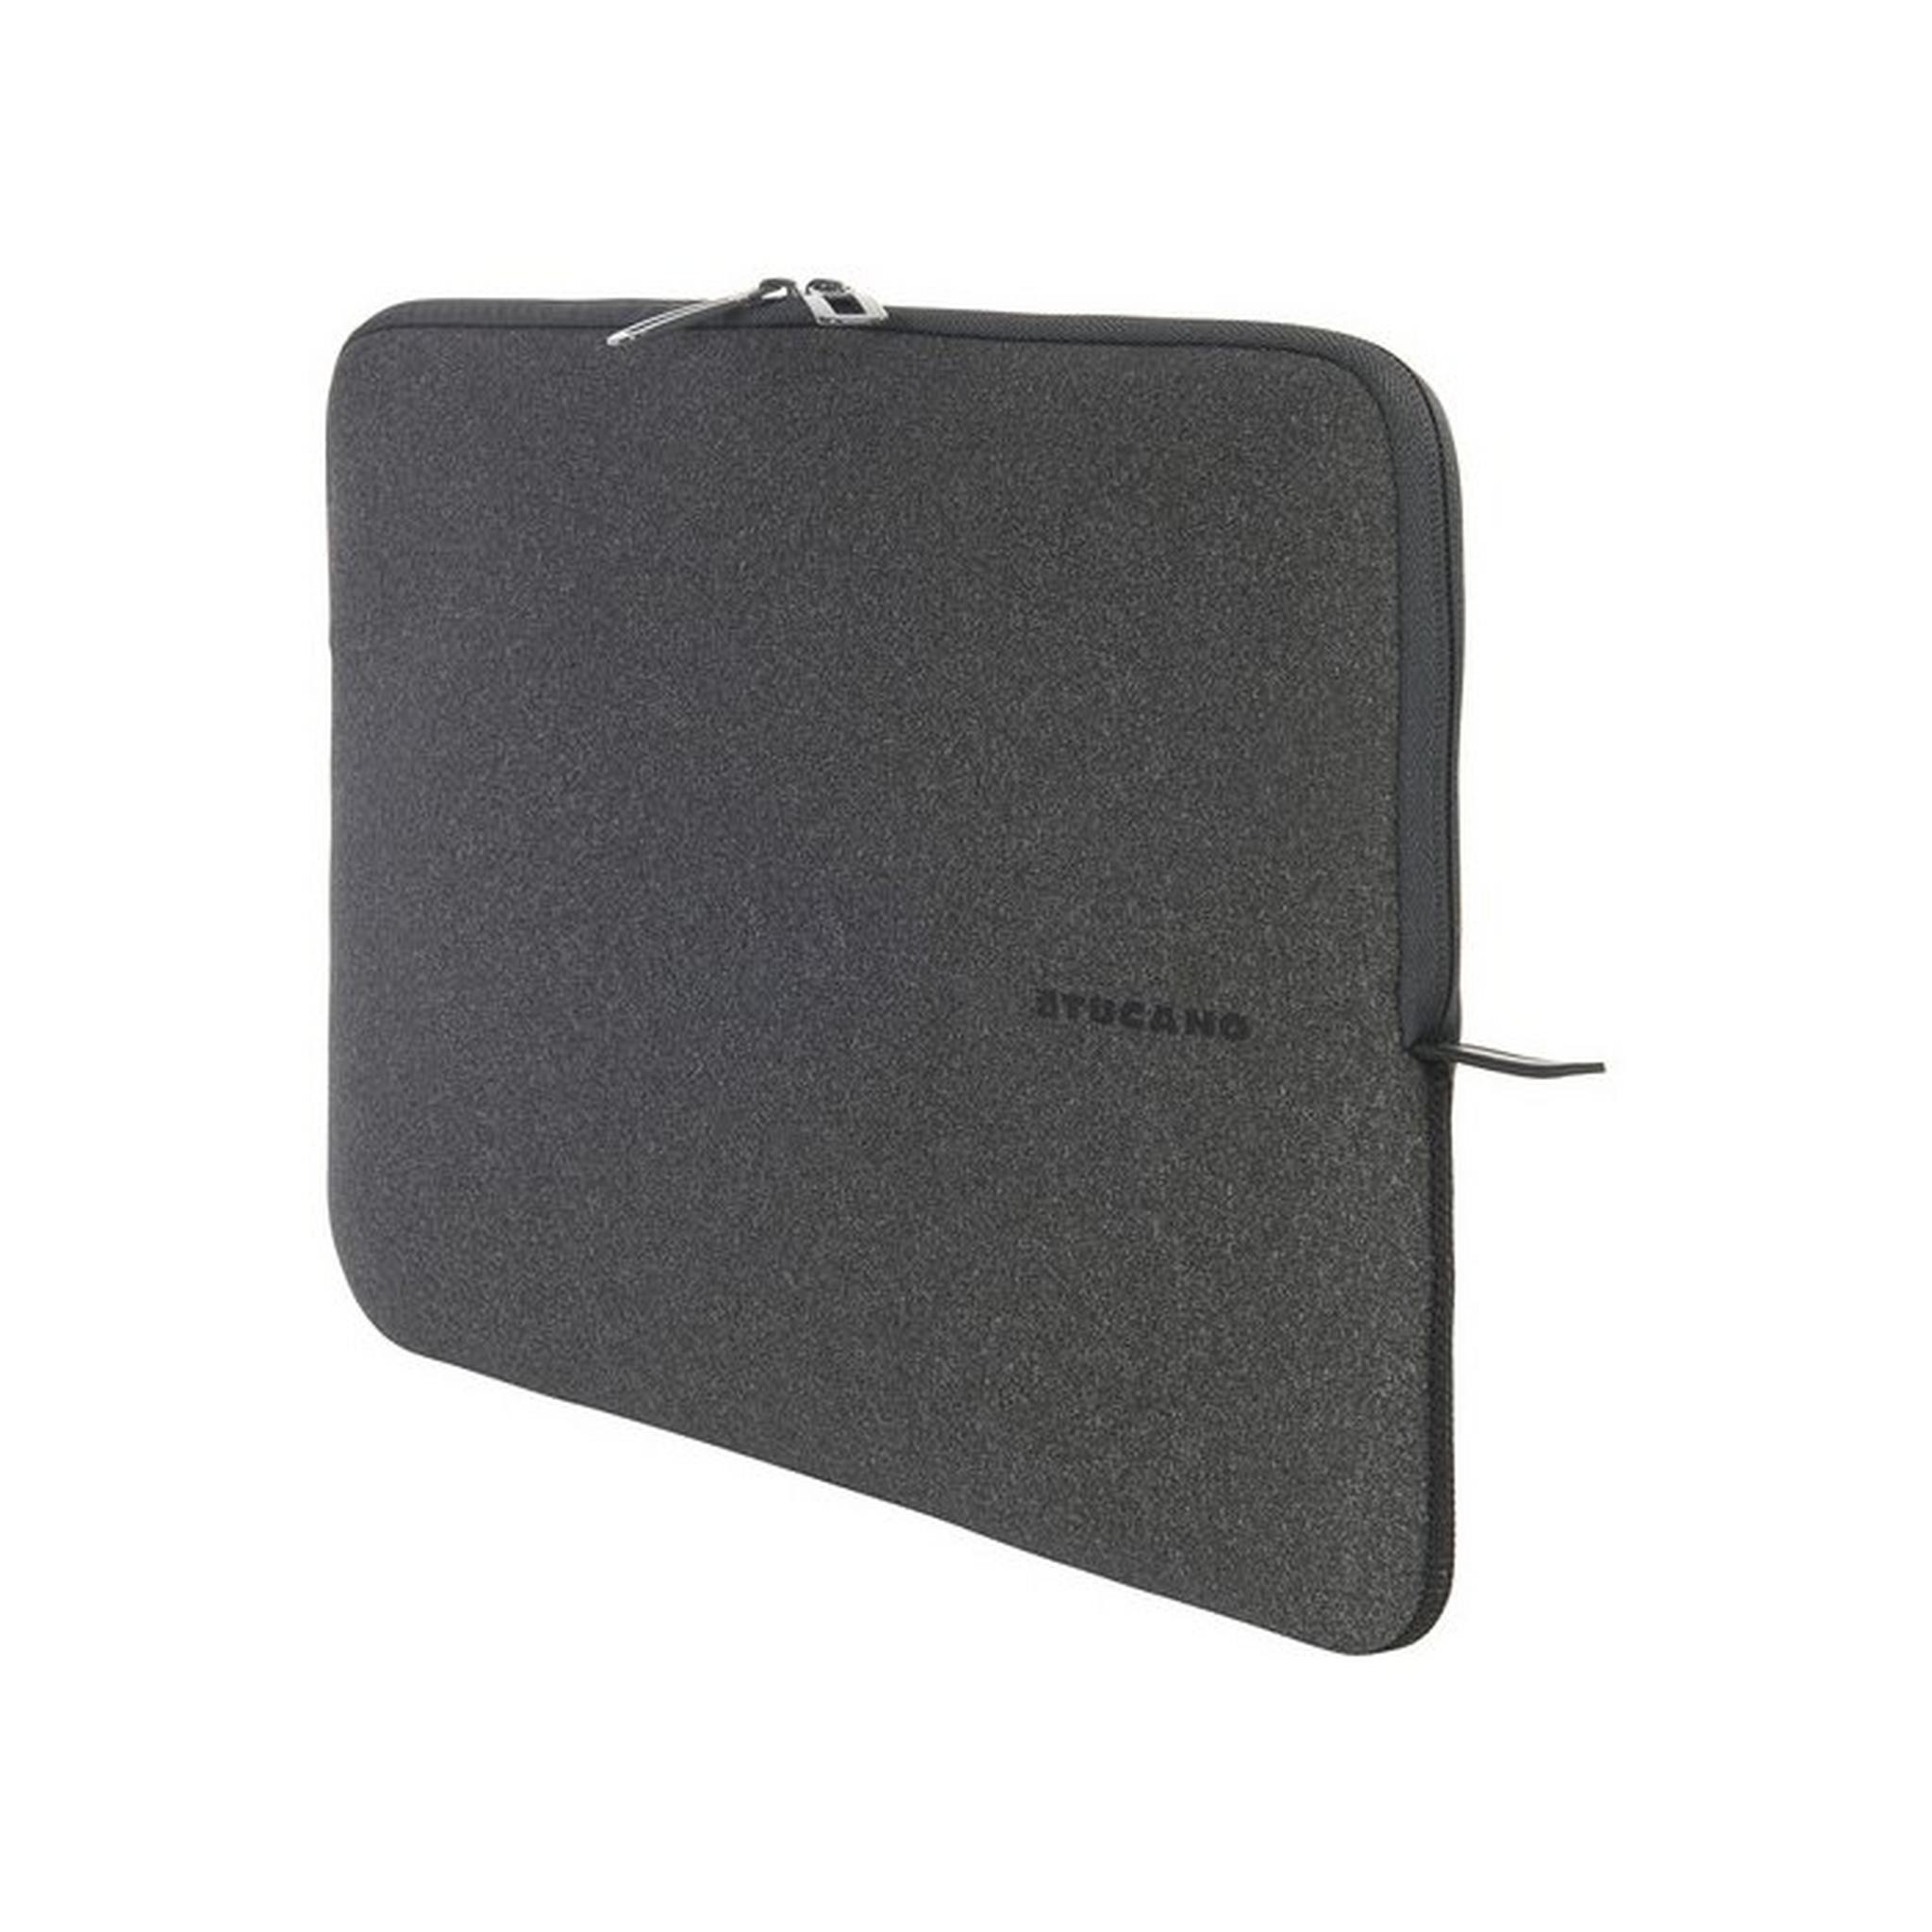 Tucano Melange Second Skin Sleeve for 13-14 Inch Laptops, BFM1314-BK – Black